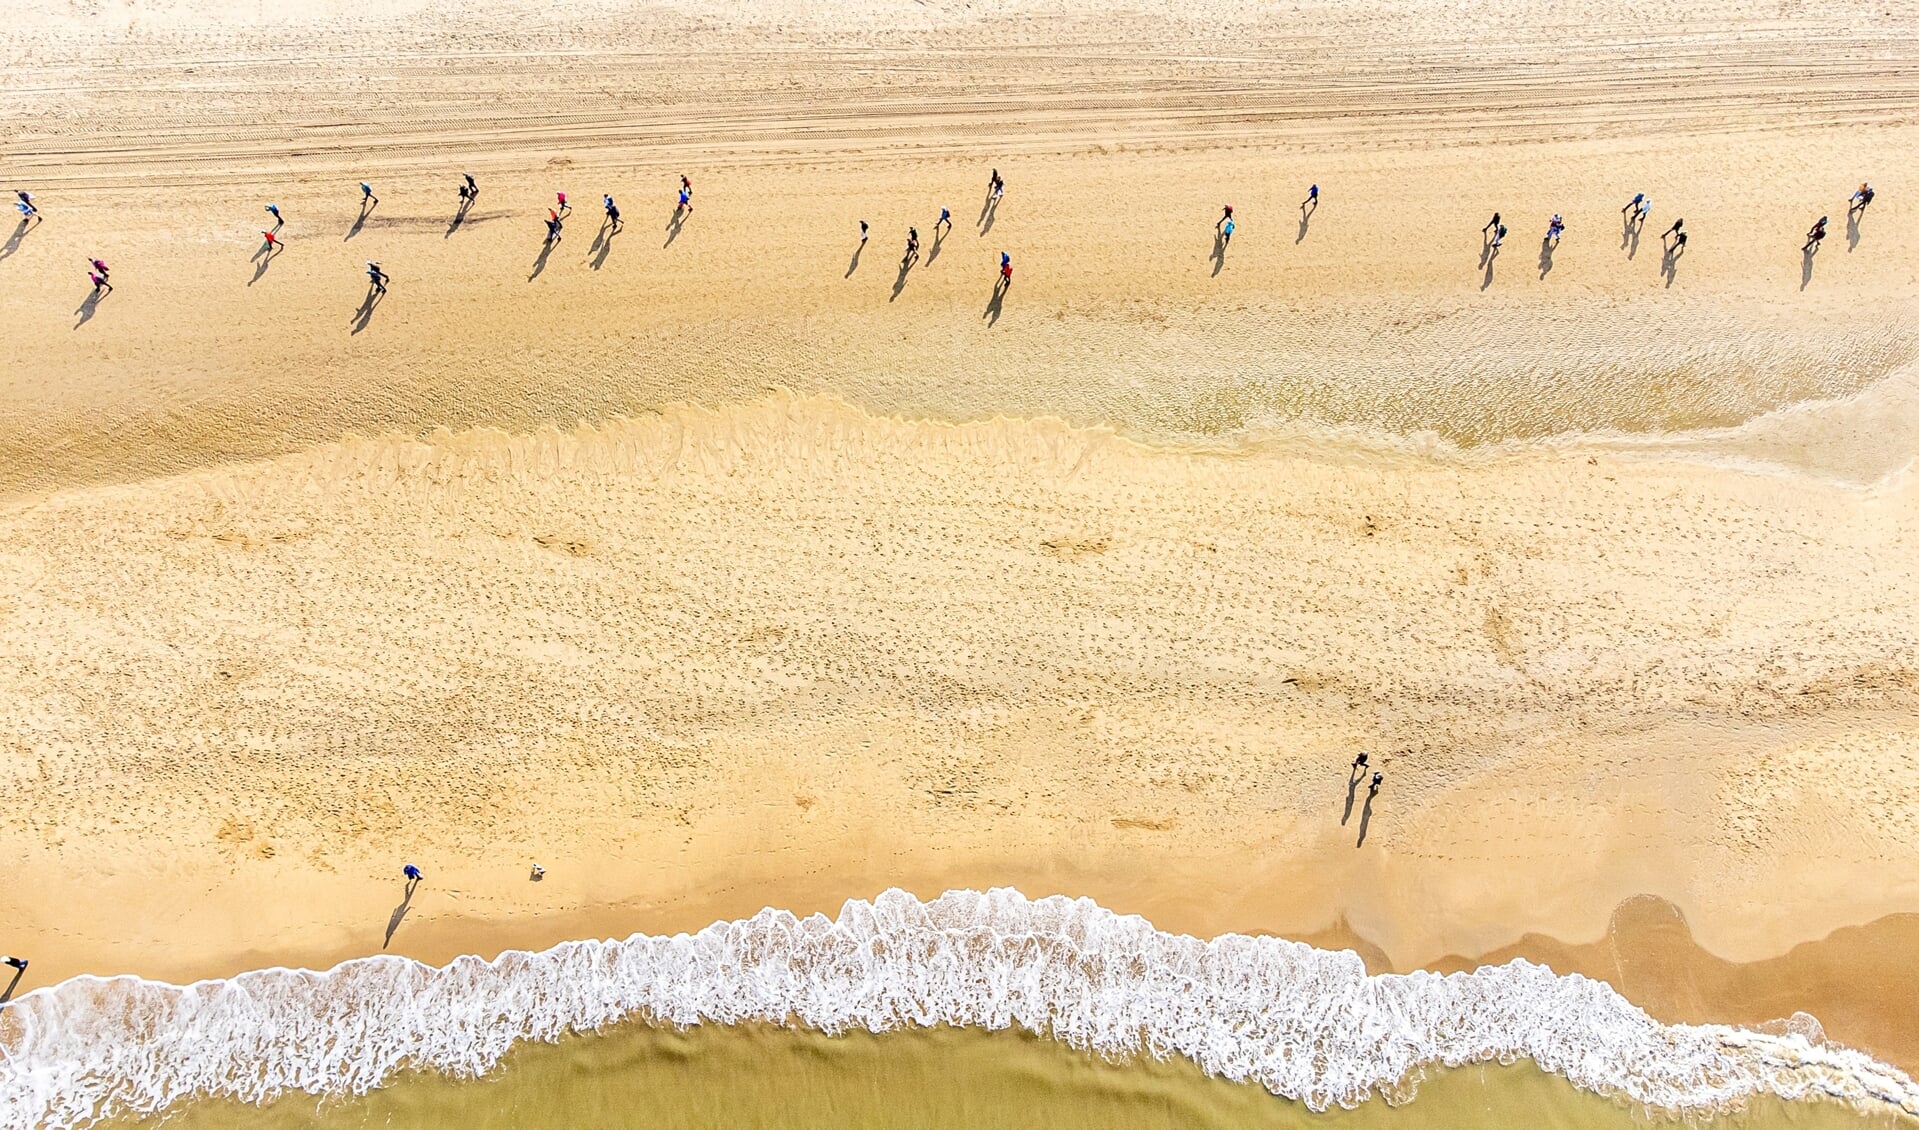 Hardlopen op het strand van Zandvoort. 